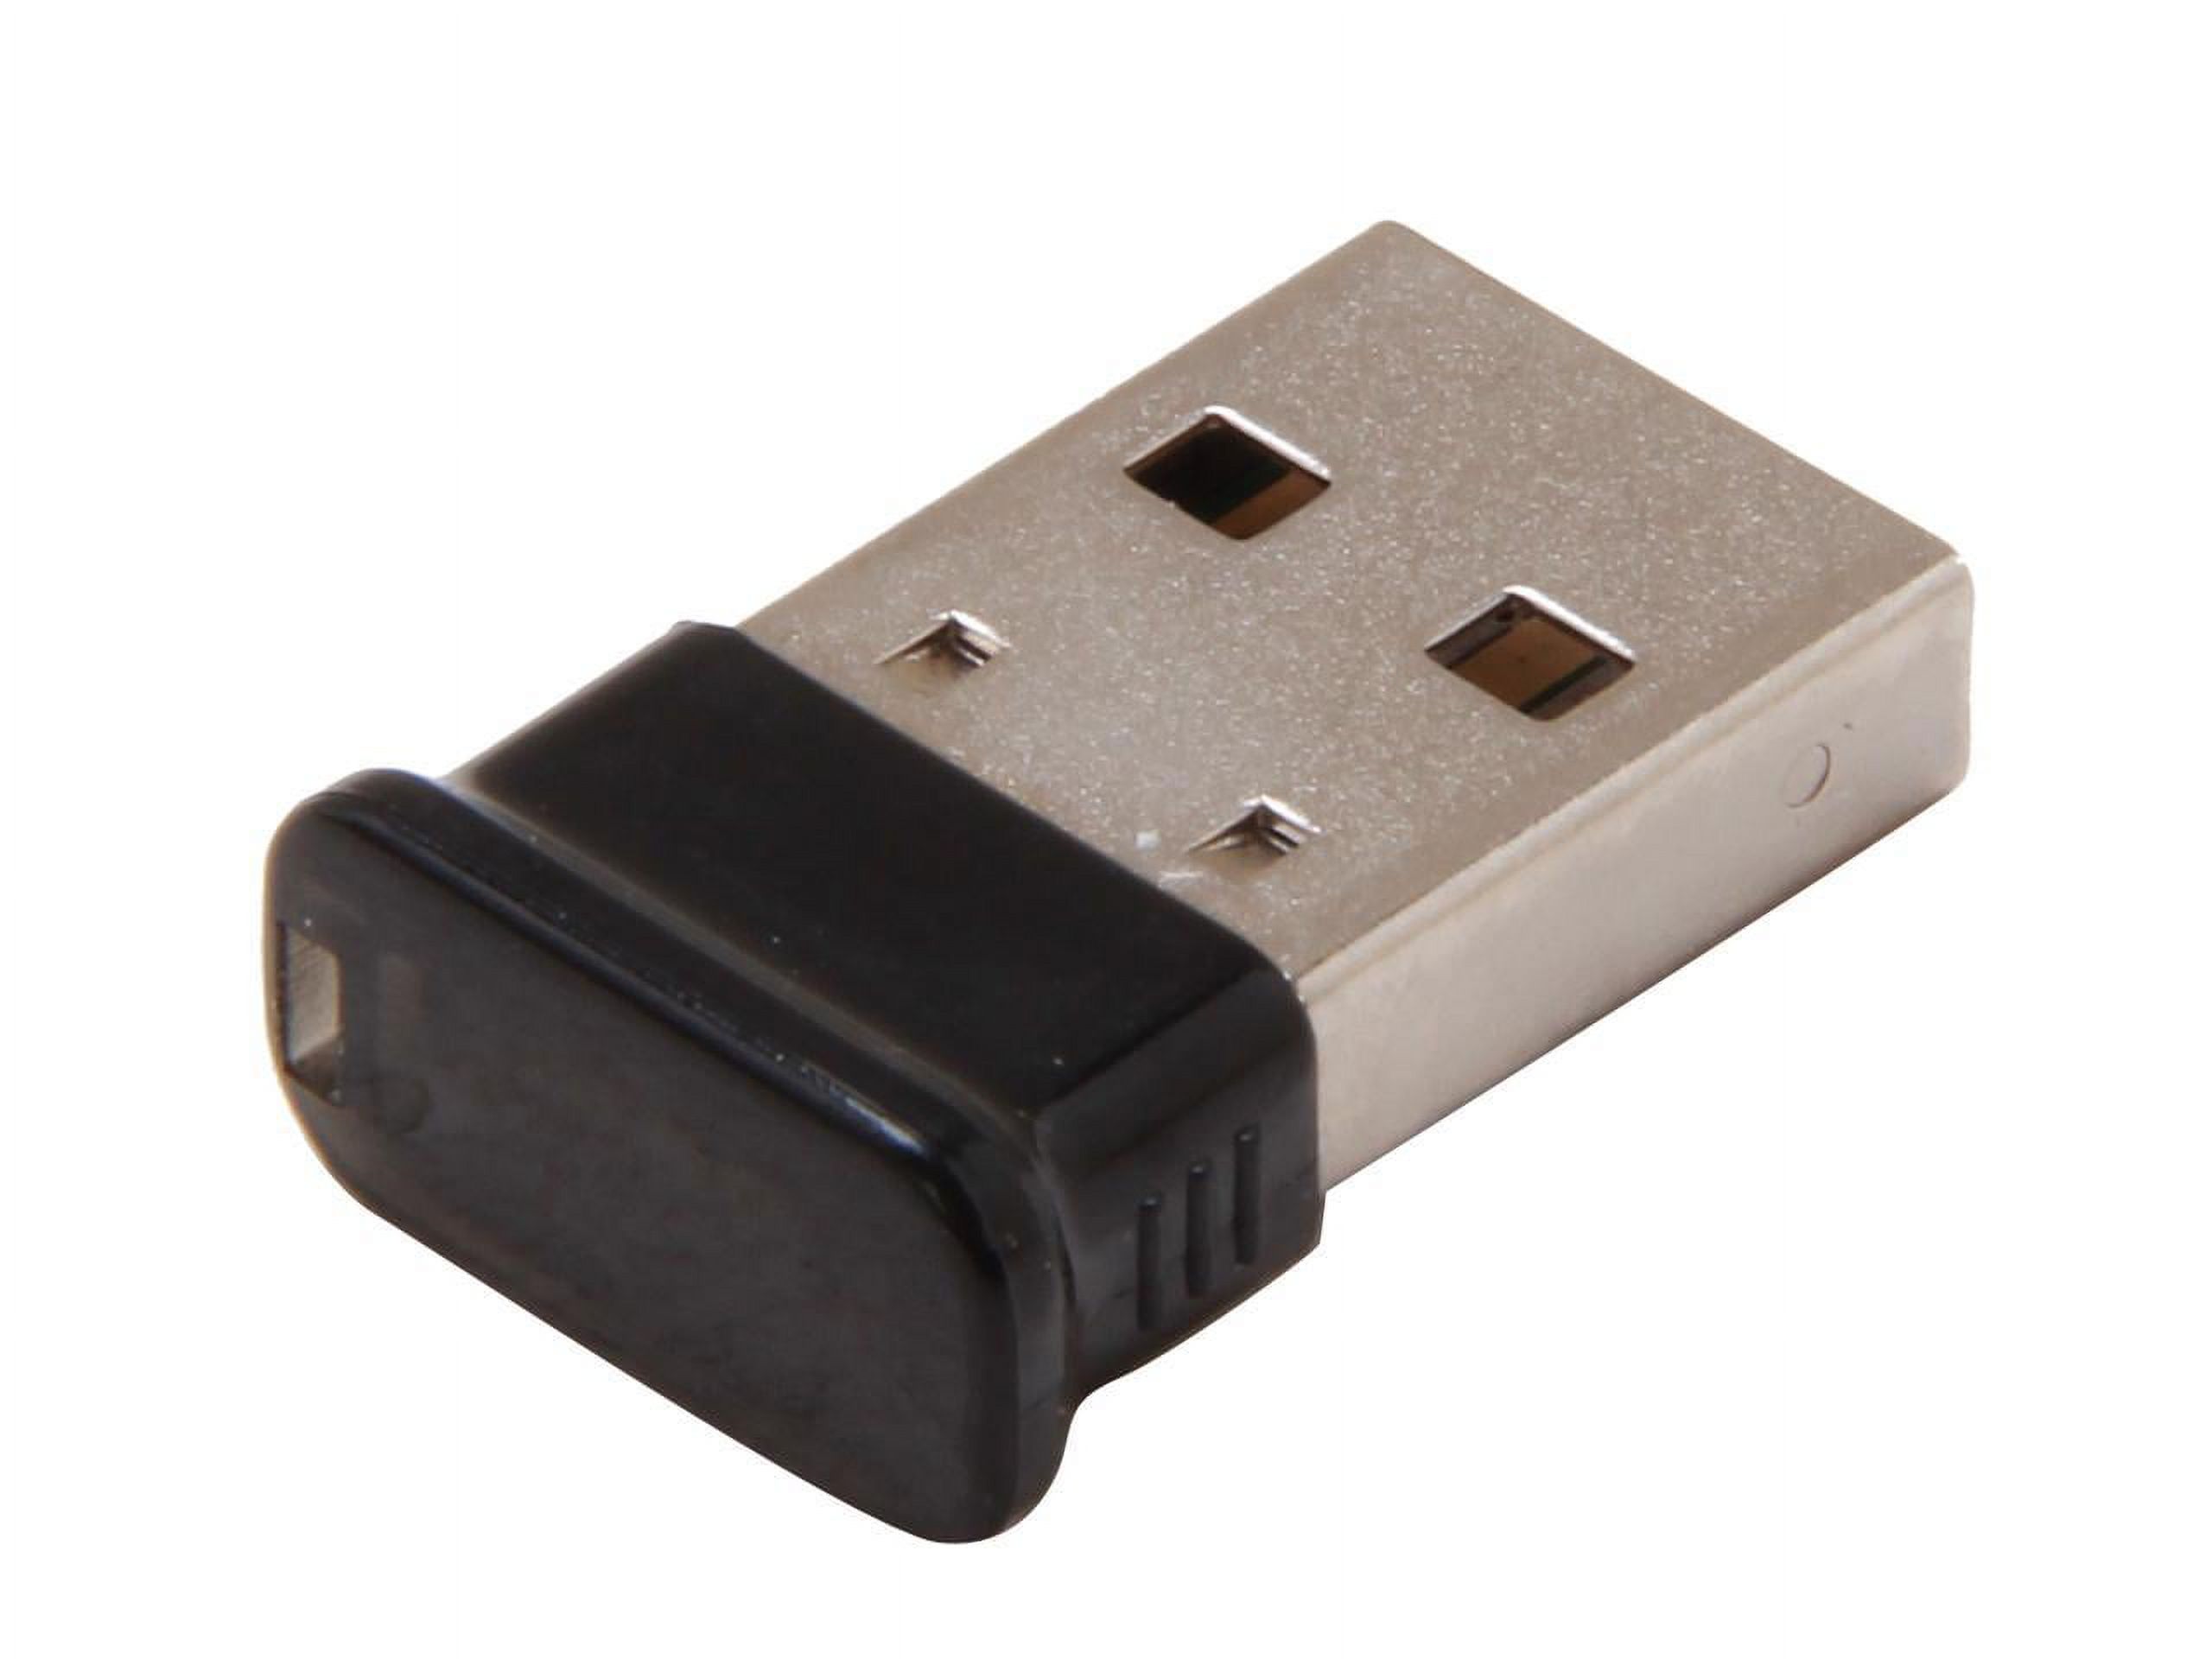 StarTech USBBT1EDR2 Mini USB Bluetooth 2.1 Adapter - Class 1 EDR Wireless Network Adapter - image 1 of 5